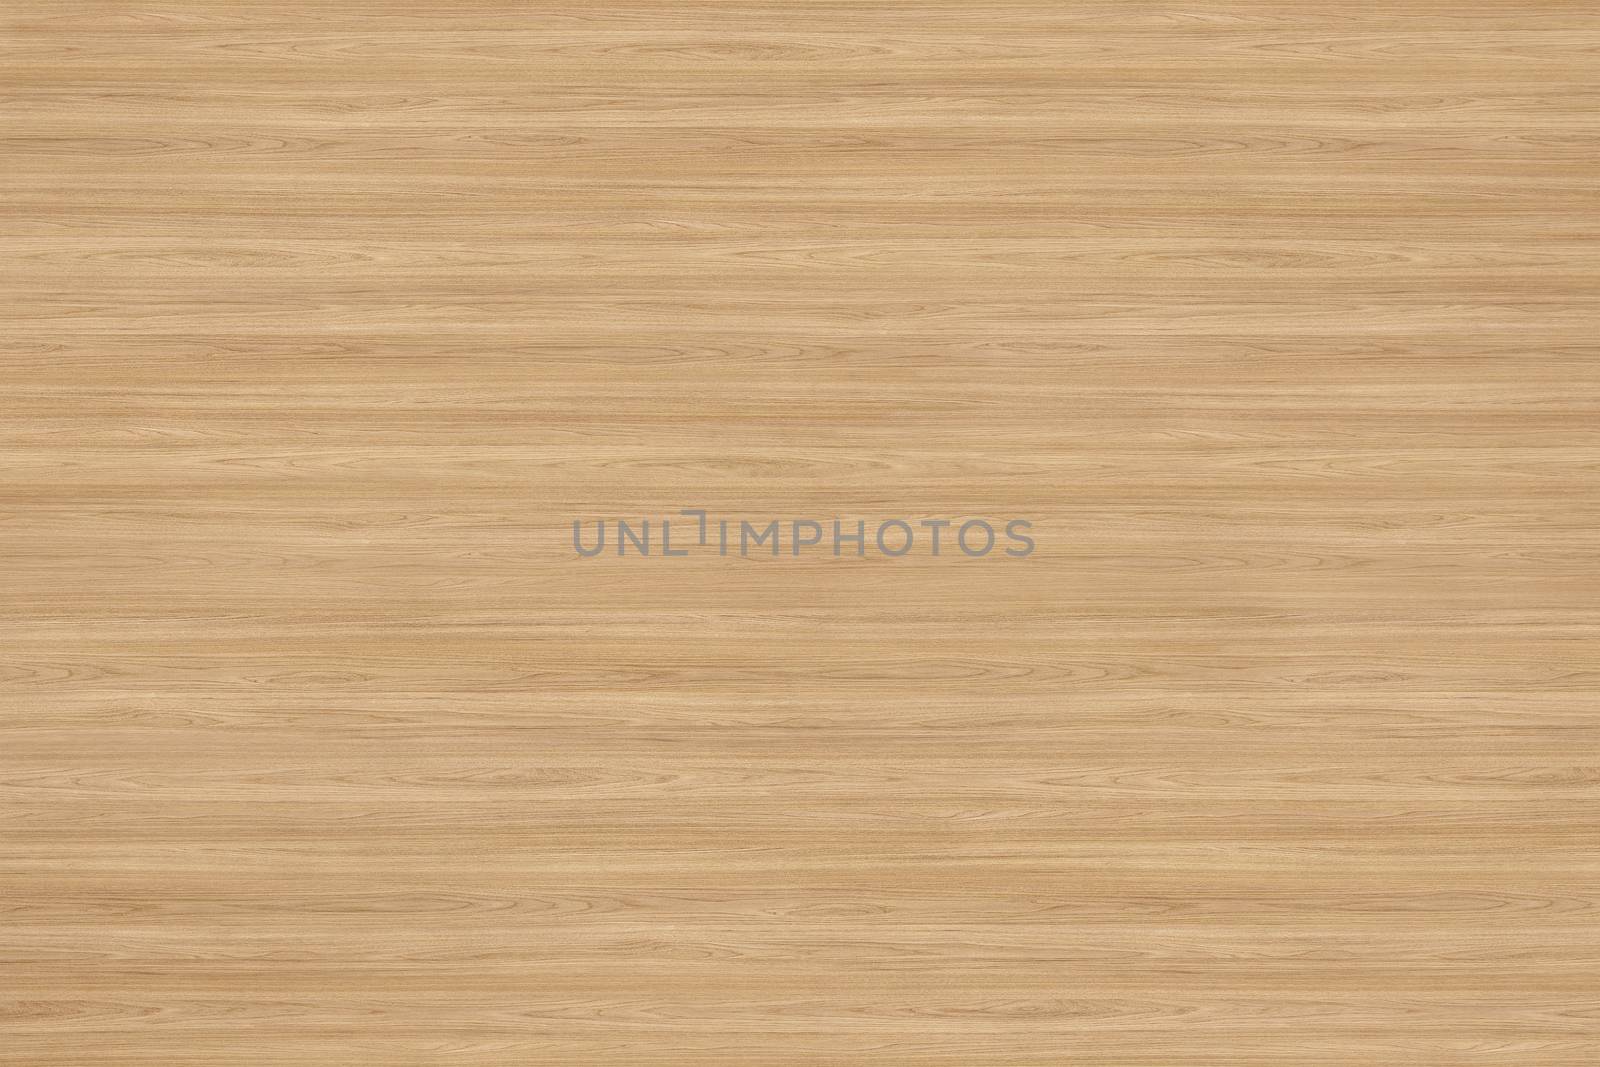 Grunge wood pattern texture background, wooden background texture